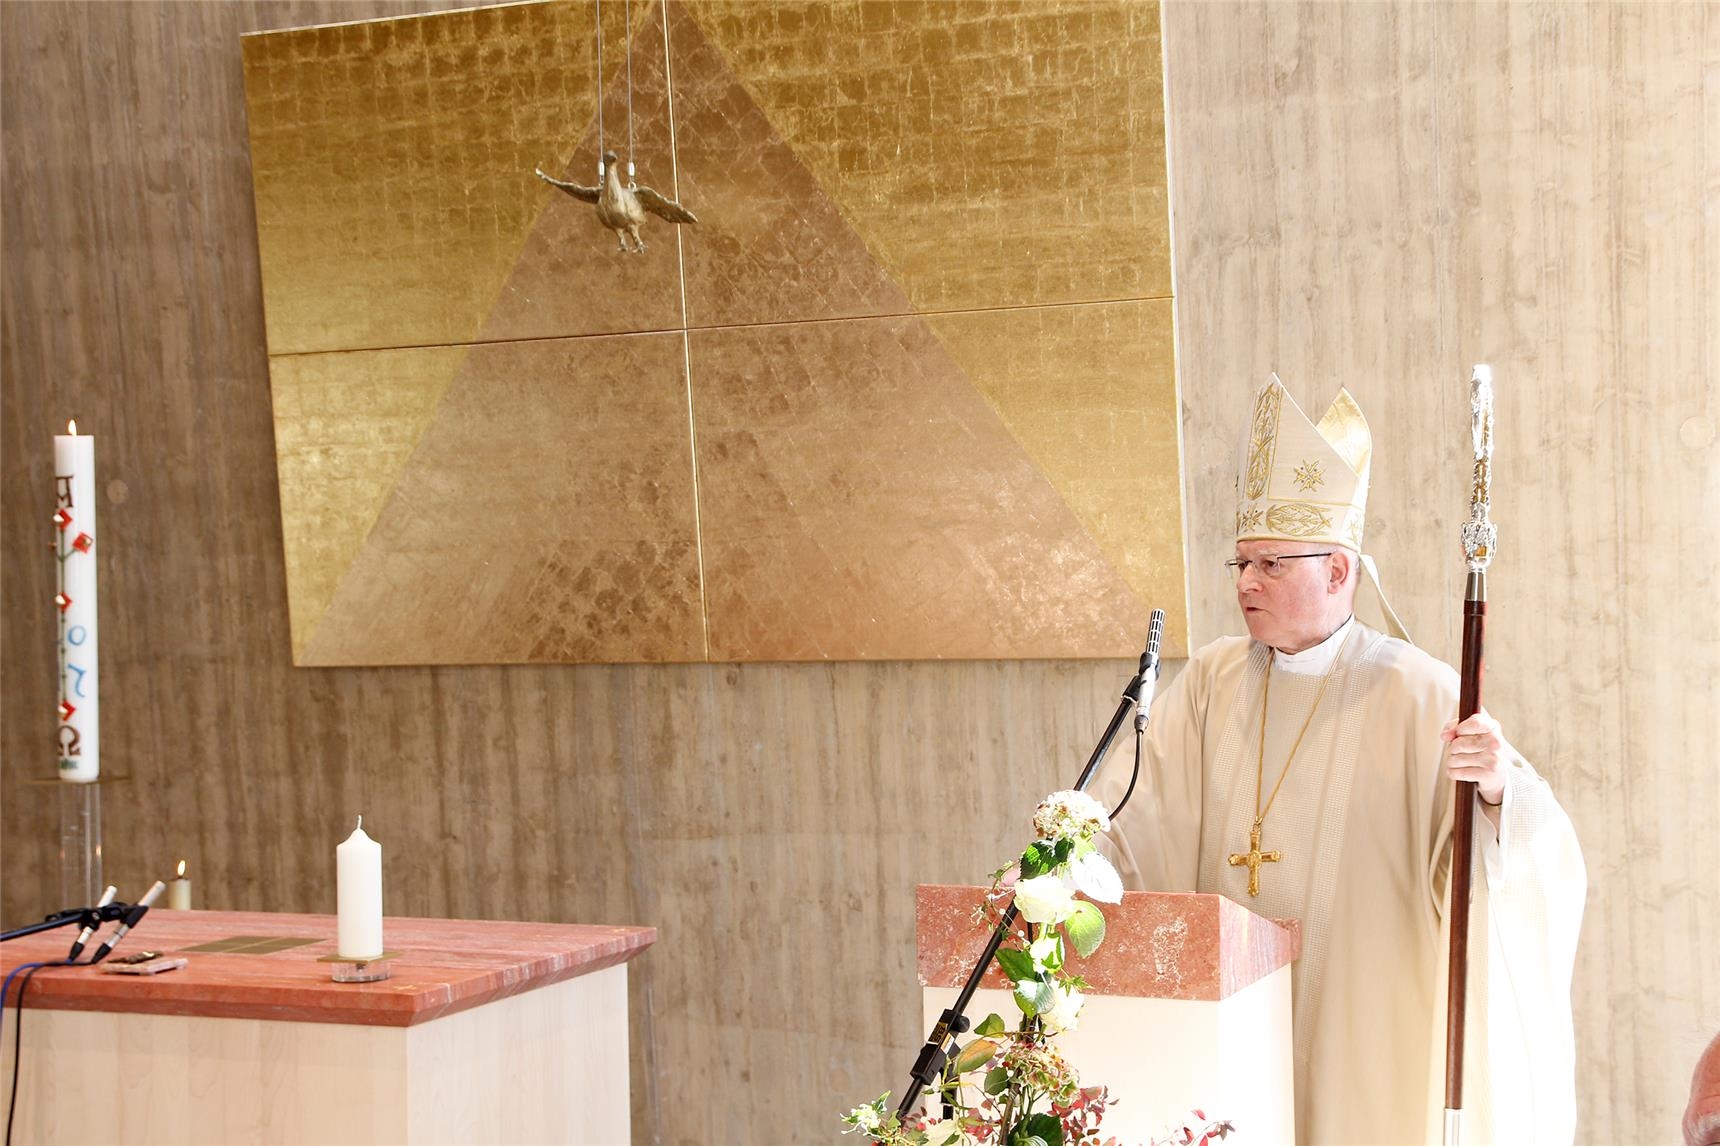 Bischof Dr. Konrad Zdarsa wünschte allen, dass die Kapelle des Caritas-Seniorenzentrums Heilig-Geist-Spital in Landsberg zum Ort werde, wo sie die Nähe und die Liebe Gottes erfahren könnten. (Bernhard Gattner)